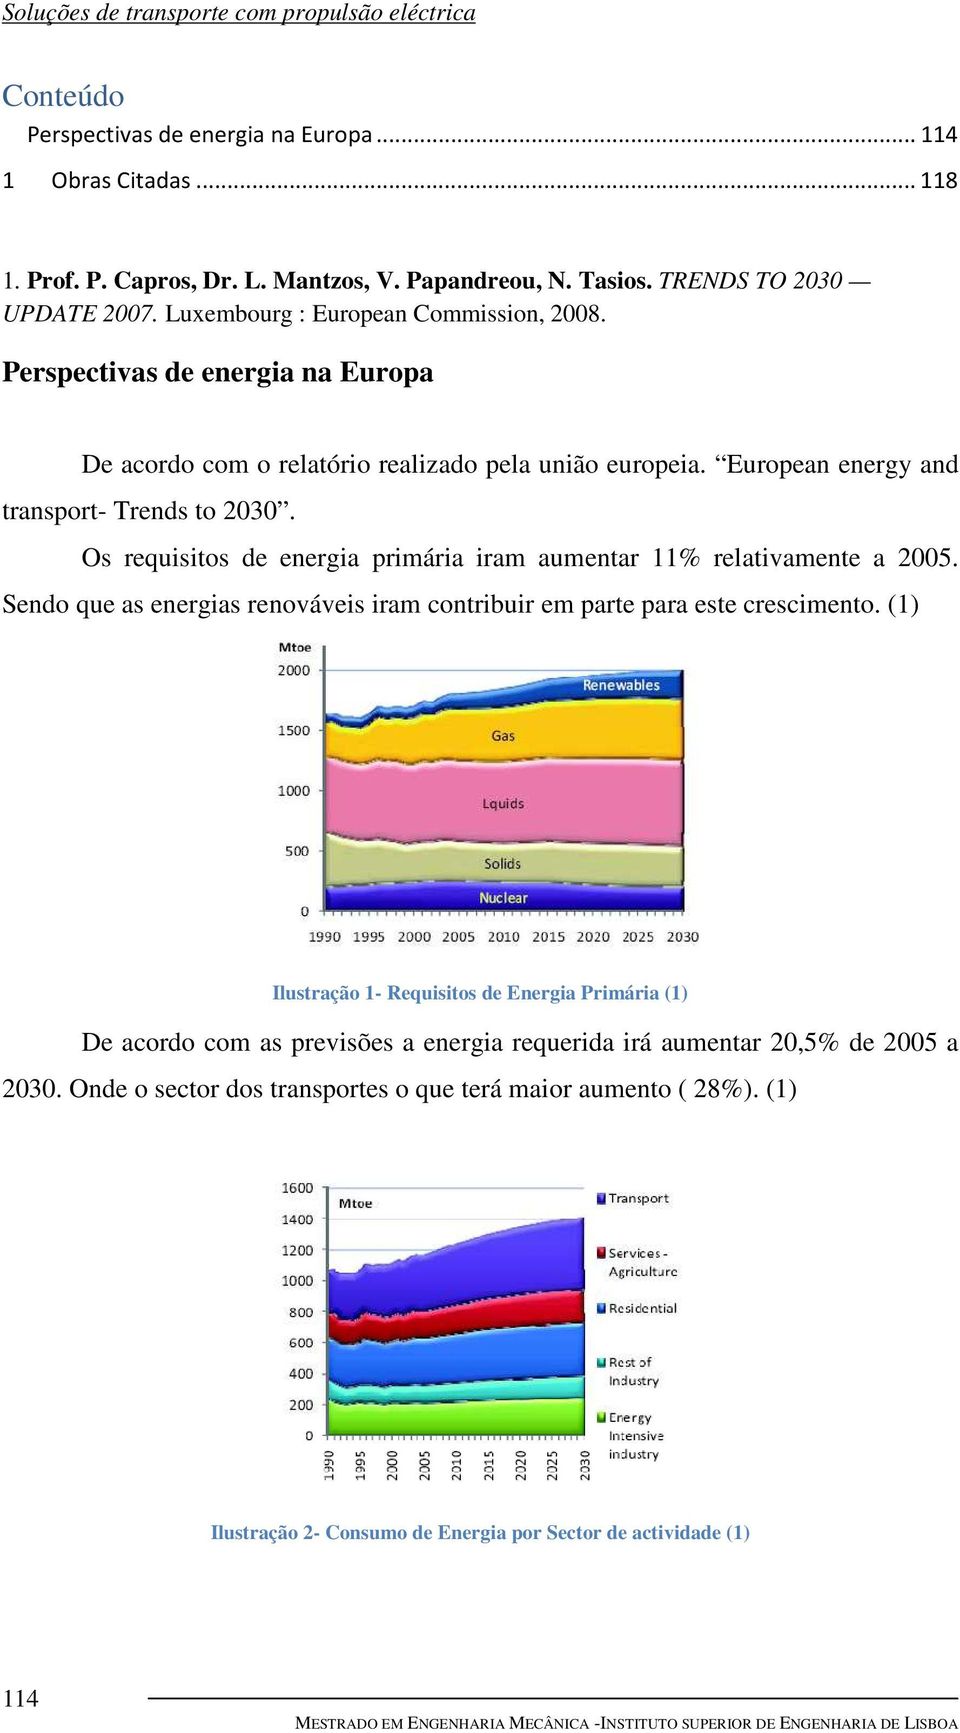 Os requisitos de energia primária iram aumentar 11% relativamente a 2005. Sendo que as energias renováveis iram contribuir em parte para este crescimento.